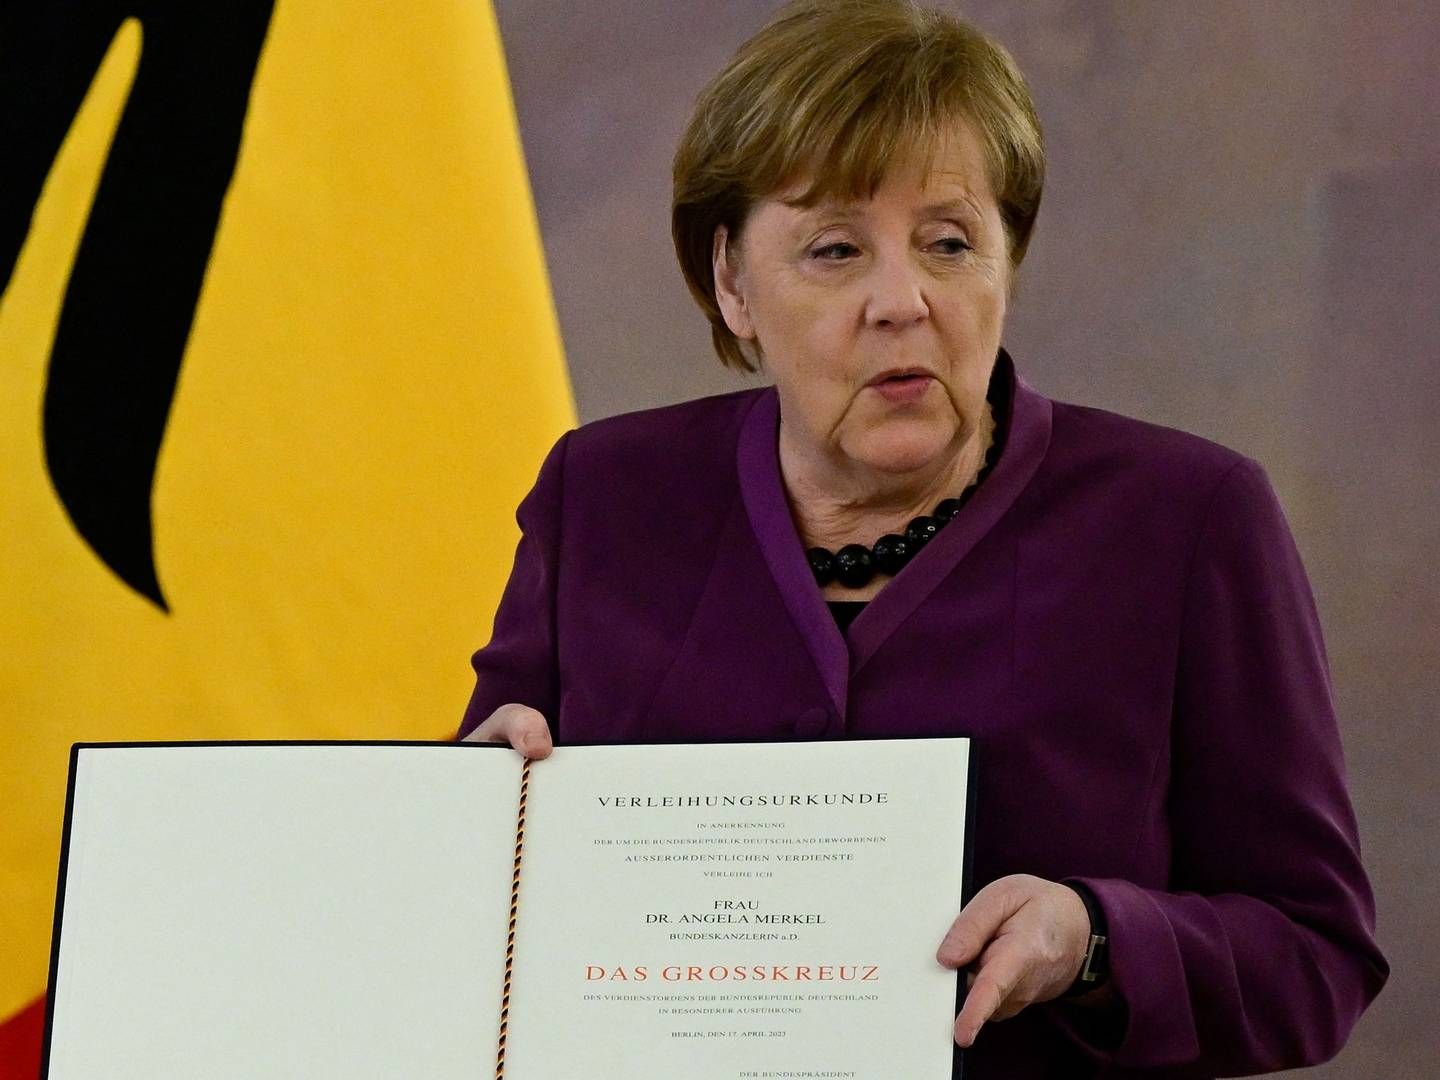 Den tidligere kansler Angela Merkel har fået overrakt en særlig fortjenstmedalje for sin indsats for Tyskland. | Foto: John Macdougall/AFP/Ritzau Scanpix